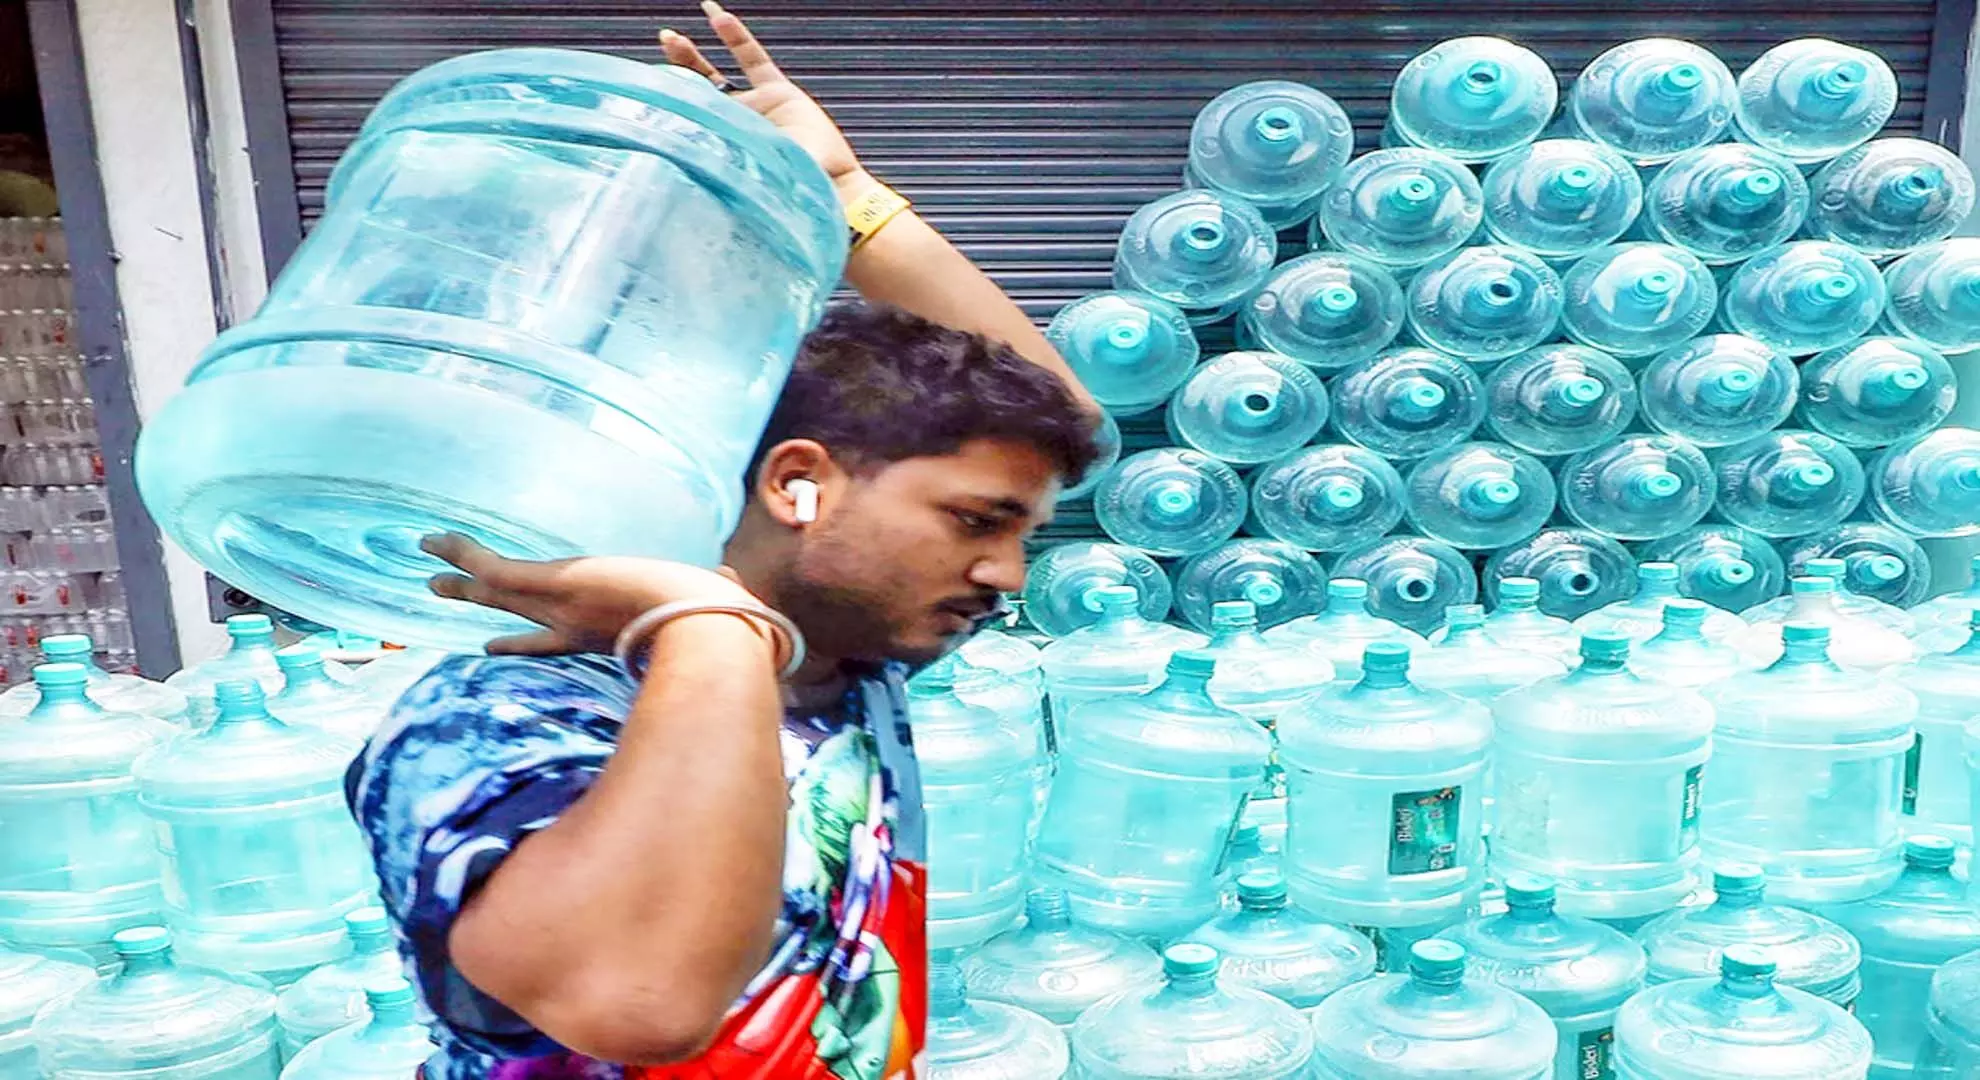 बेंगलुरु जल संकट: फ्लैट 50 प्रतिशत उपचारित पानी का उपयोग कर सकते हैं, बाकी बेच सकते हैं